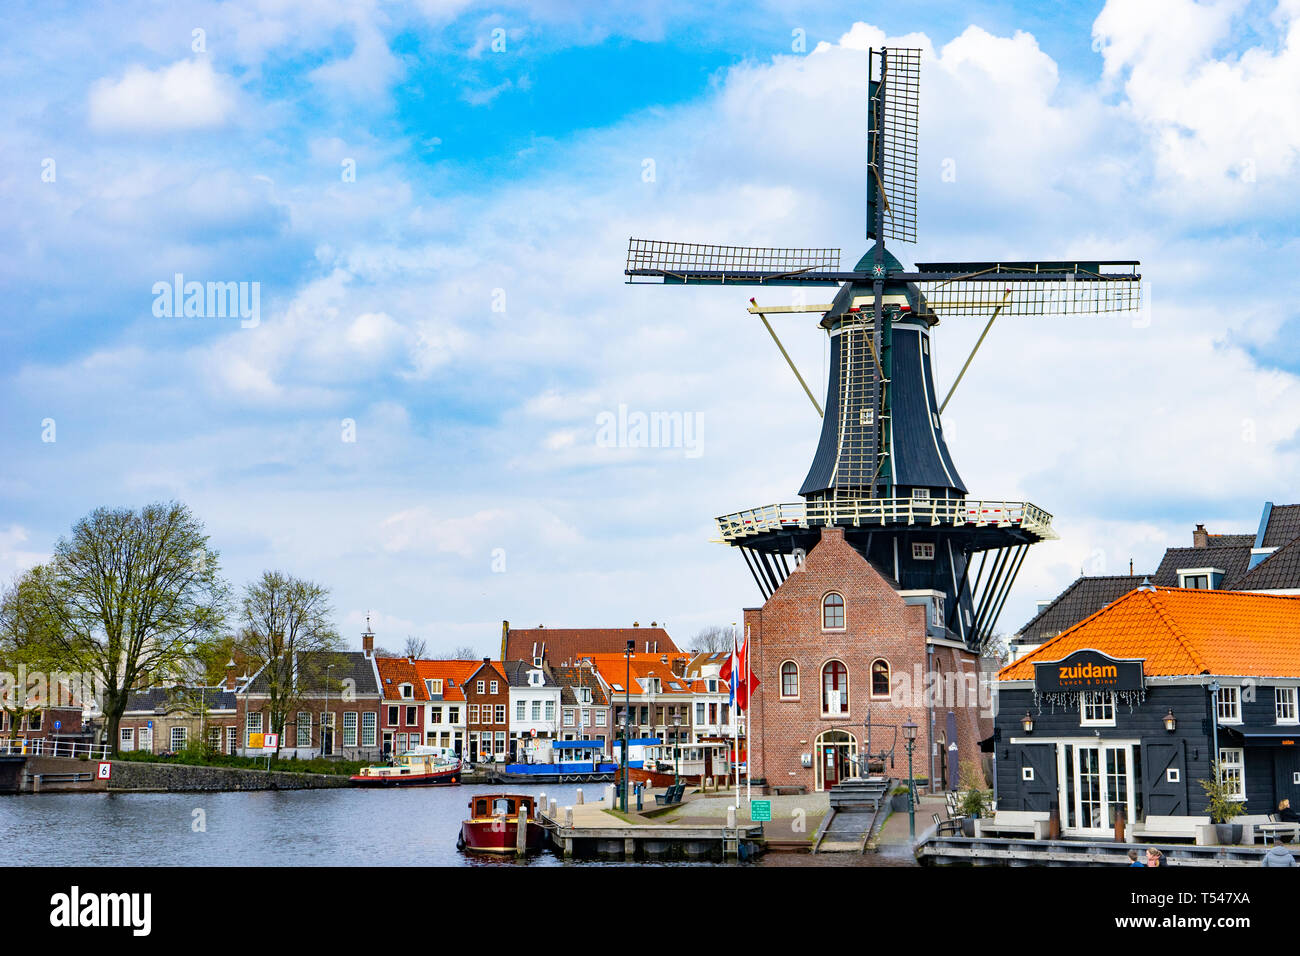 HAARLEM, Pays-Bas - le 9 avril 2016 : Adriaan de moulin à vent hollandais traditionnel sur le canal de l'eau aux Pays-Bas. Banque D'Images